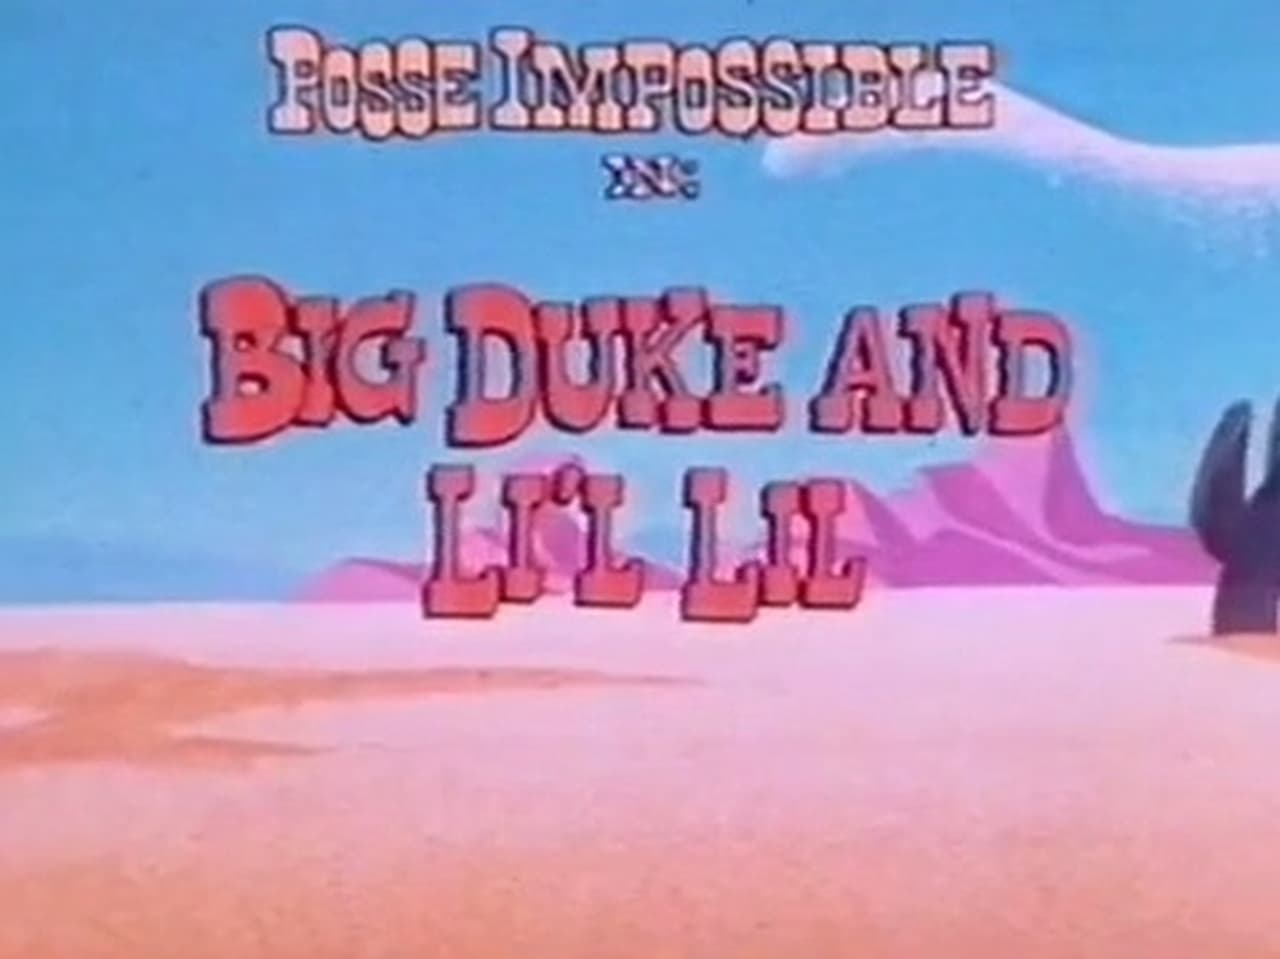 Big Duke and Lil Lil